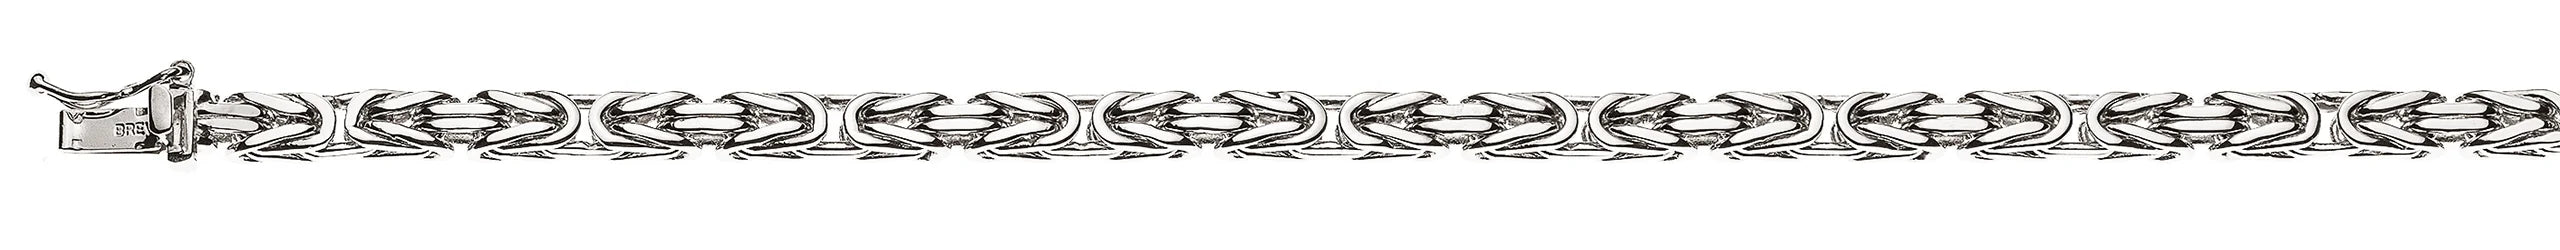 Armband Königskette Klassisch Weissgold 750 ca. 4.0mm x 19cm